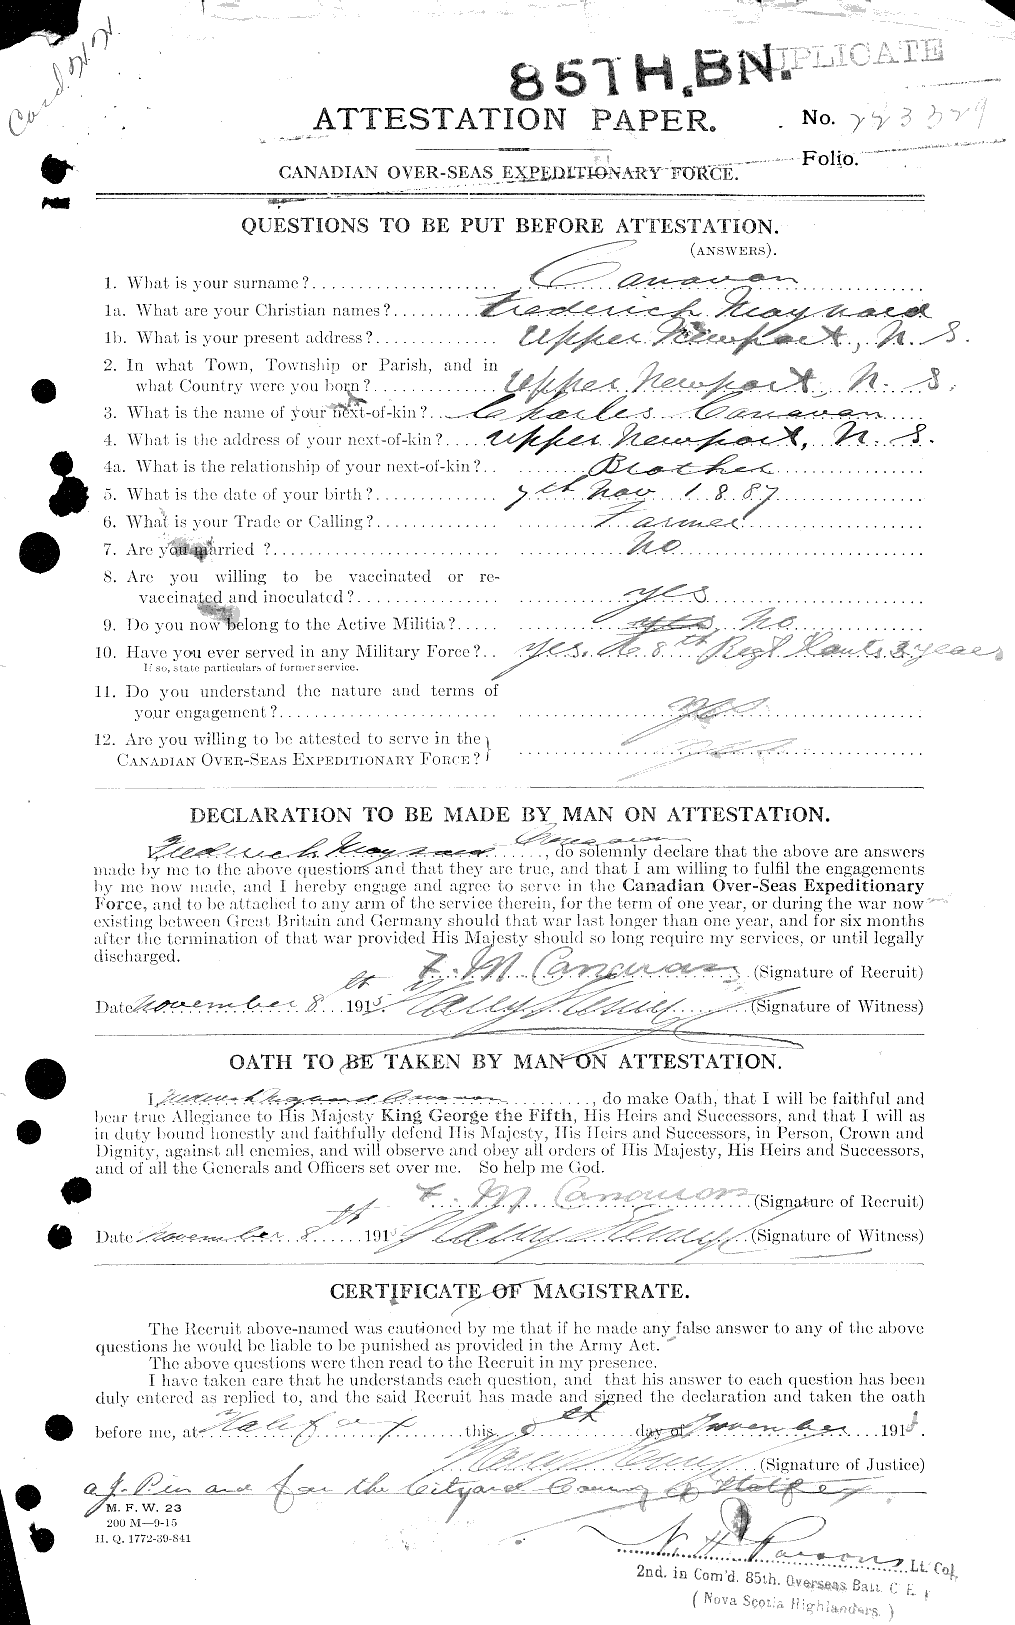 Dossiers du Personnel de la Première Guerre mondiale - CEC 008853a